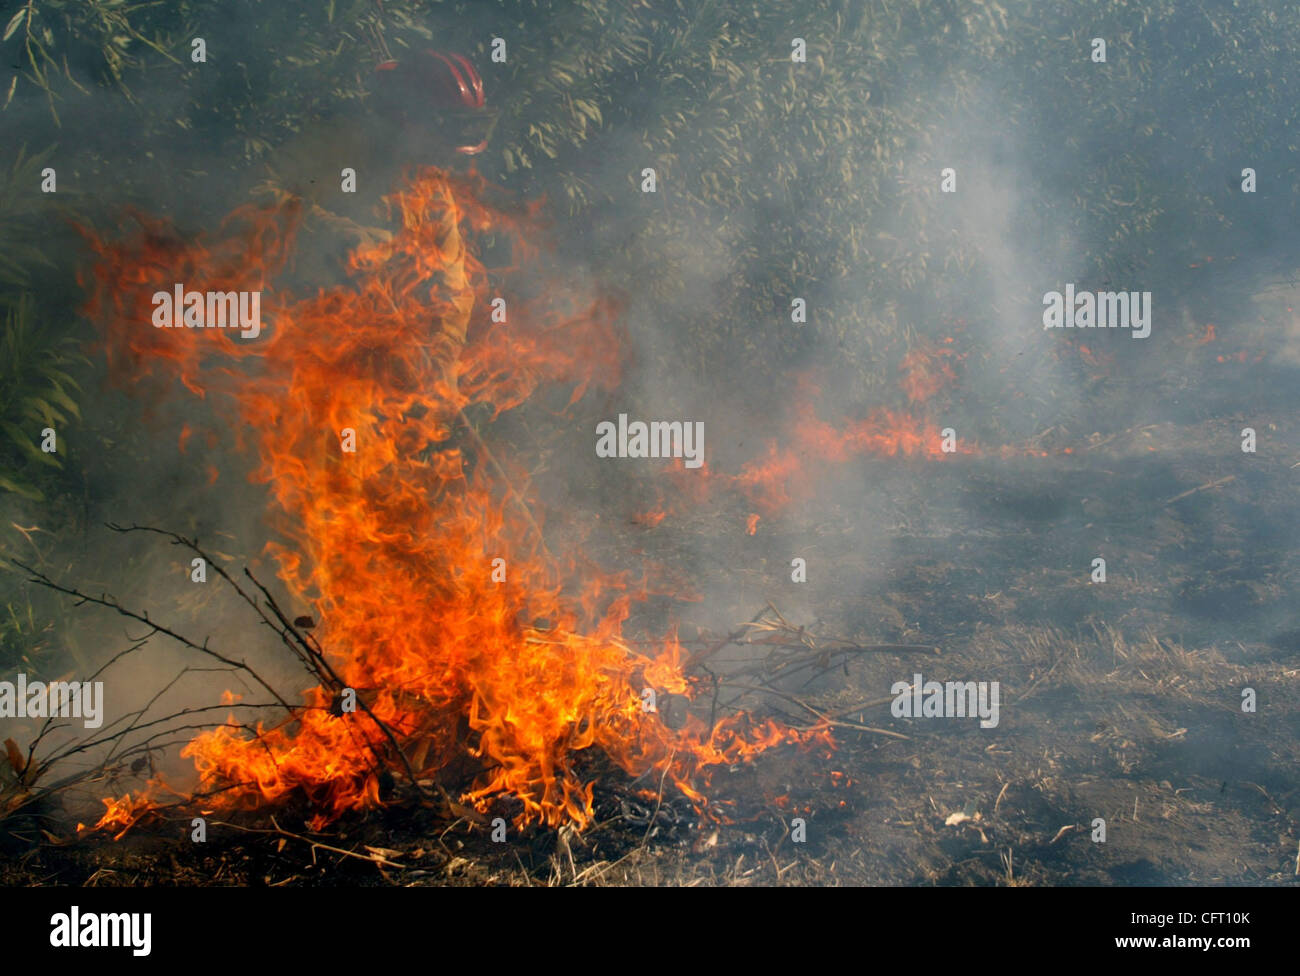 Guidato dal fuoco immagini e fotografie stock ad alta risoluzione - Alamy